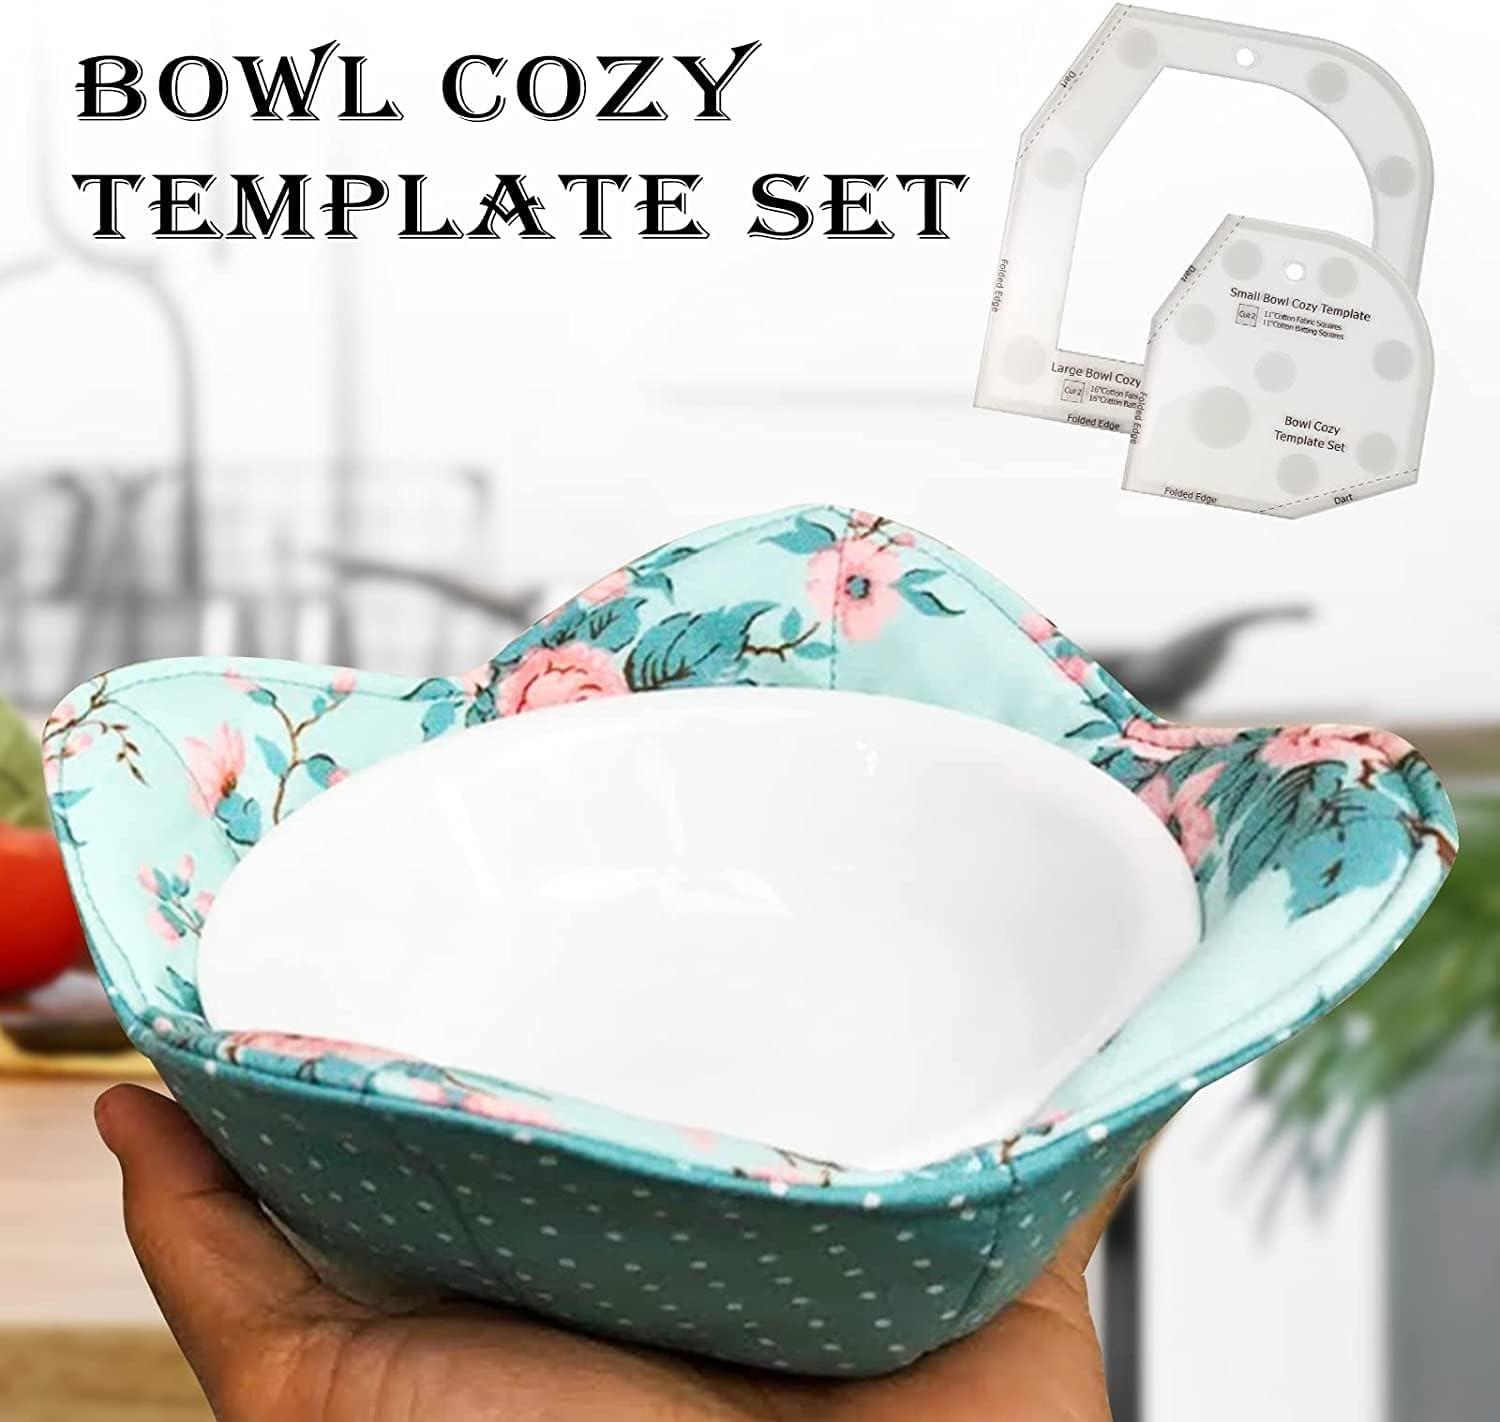 Bowl Cozy Template Cutting Ruler Set, 3Pcs Acrylic Transparent